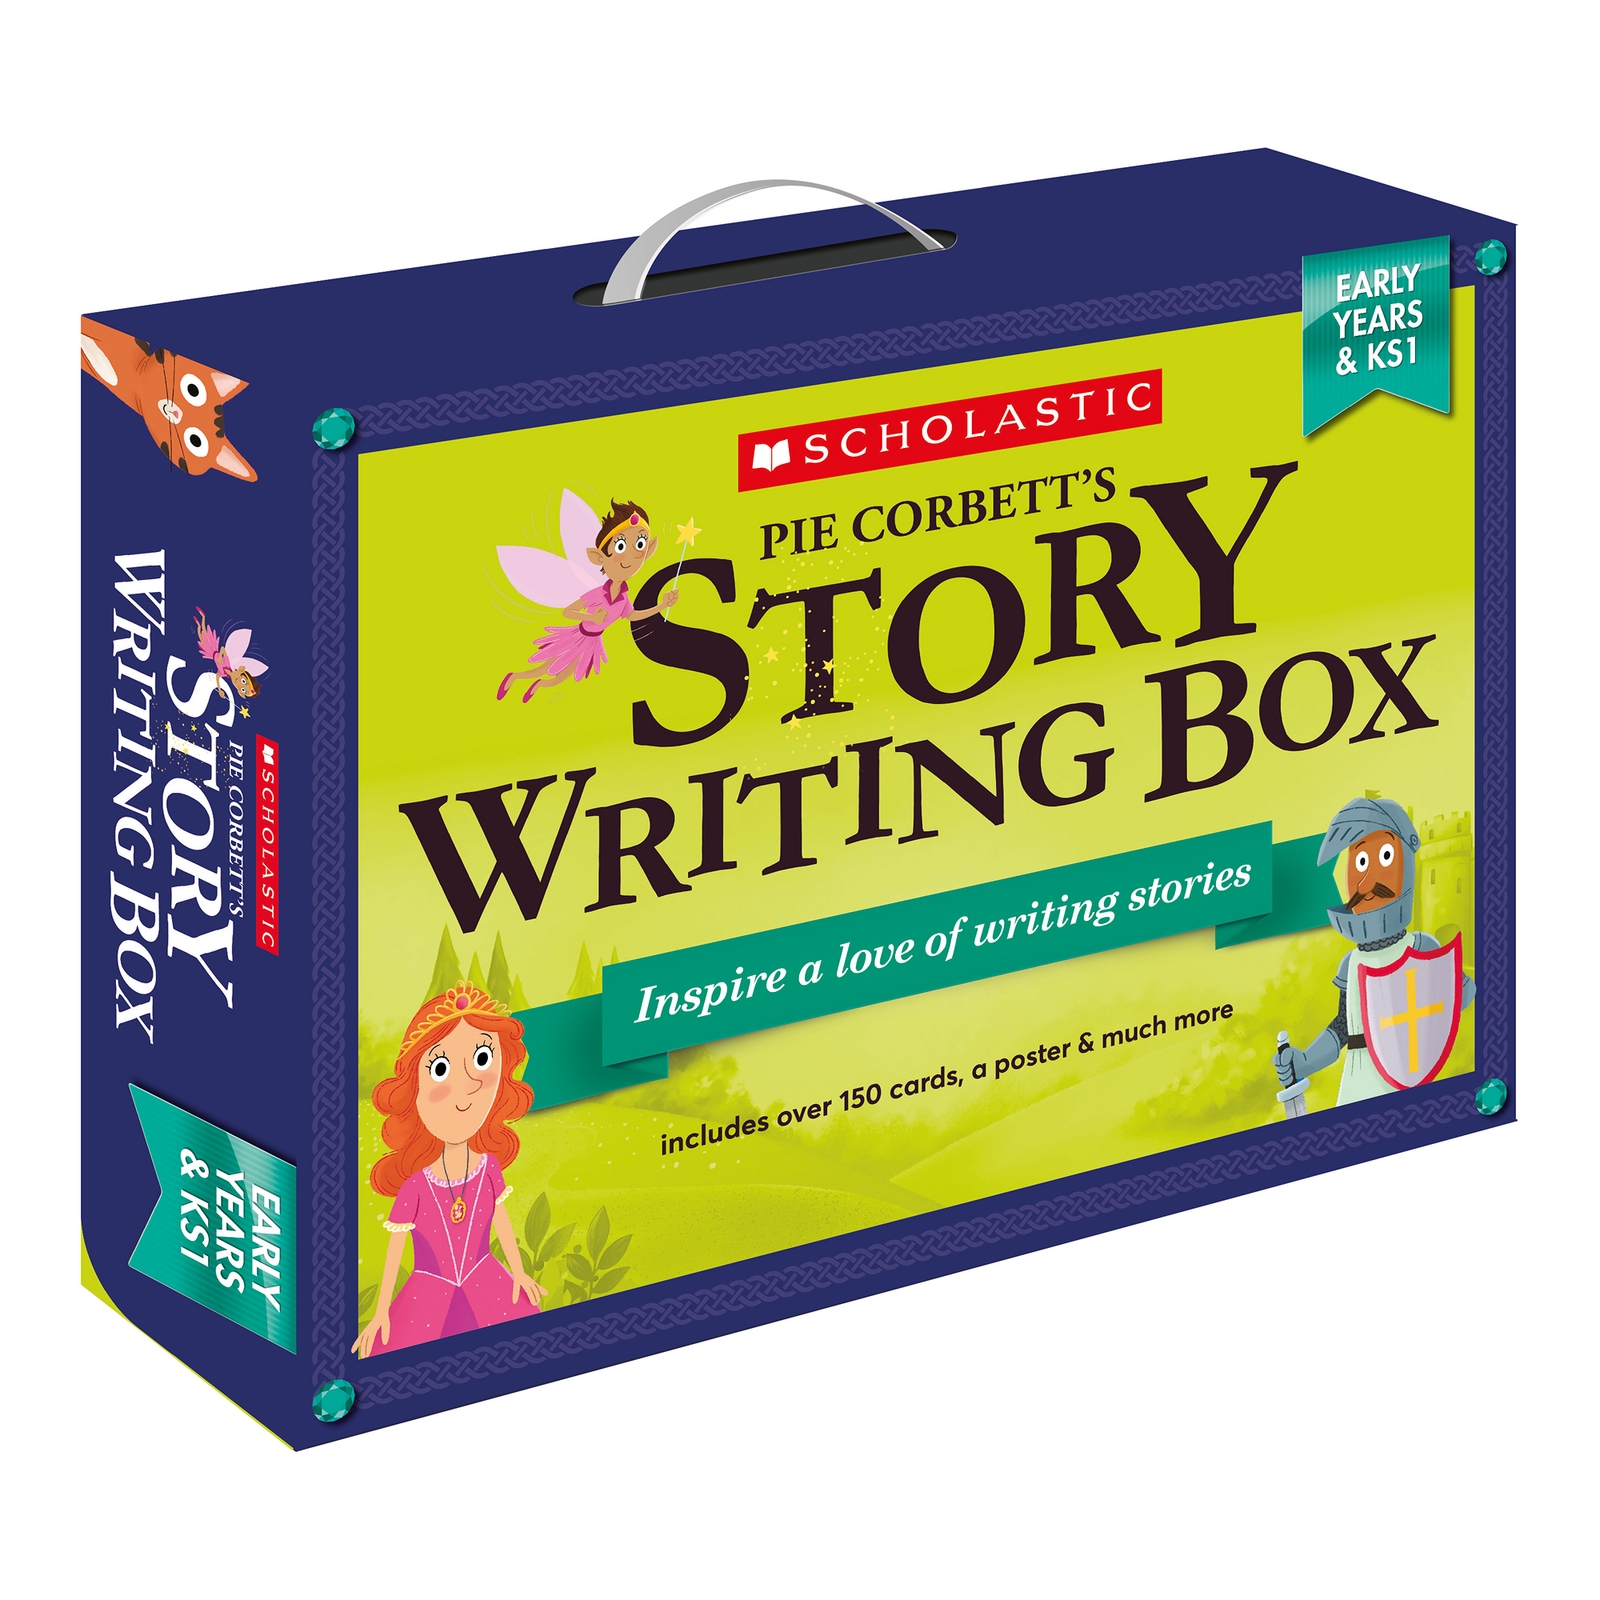 Pie Corbett's Early Years and KS1 Story Writing Box